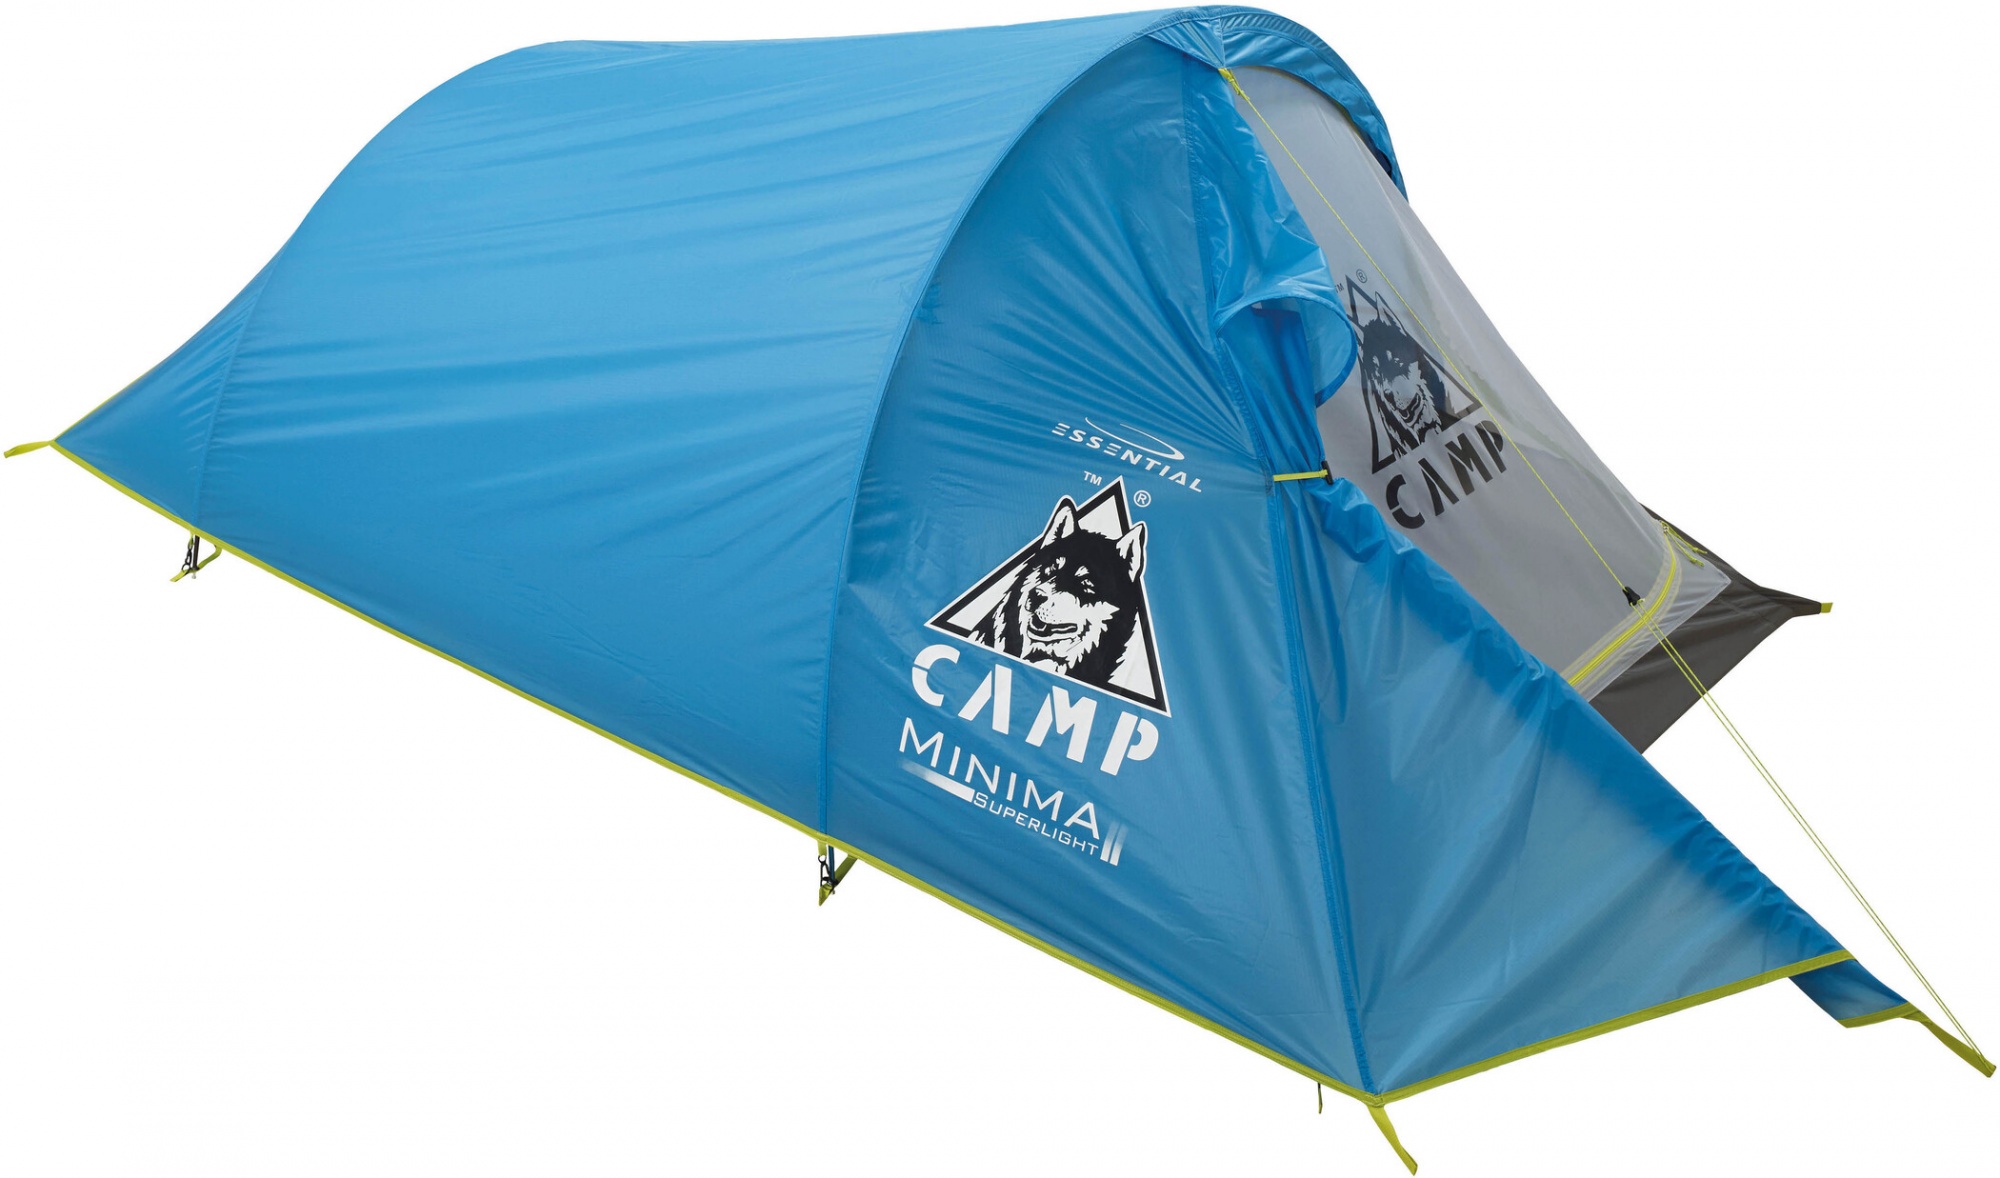 Camp price. Палатка Camp minima 2 SL. Палатка Camp minima 1 SL. Палатка Camp hike Spirit 2 Alu. Палатка Camp Nagoa v.